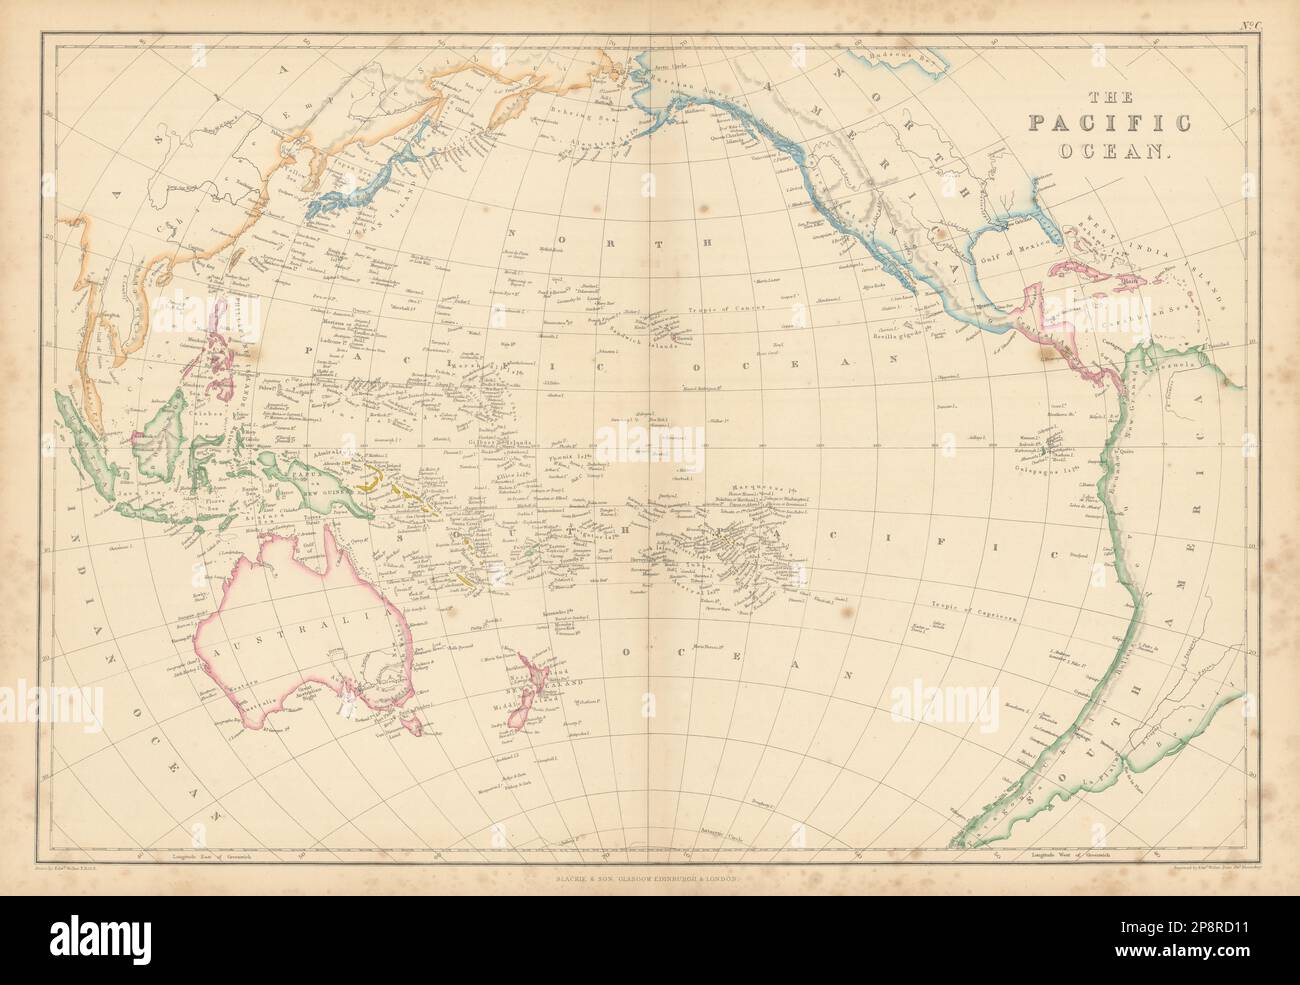 L'Oceano Pacifico di Edward Weller. Polinesia Micronesia Melanesia 1859 mappa Foto Stock